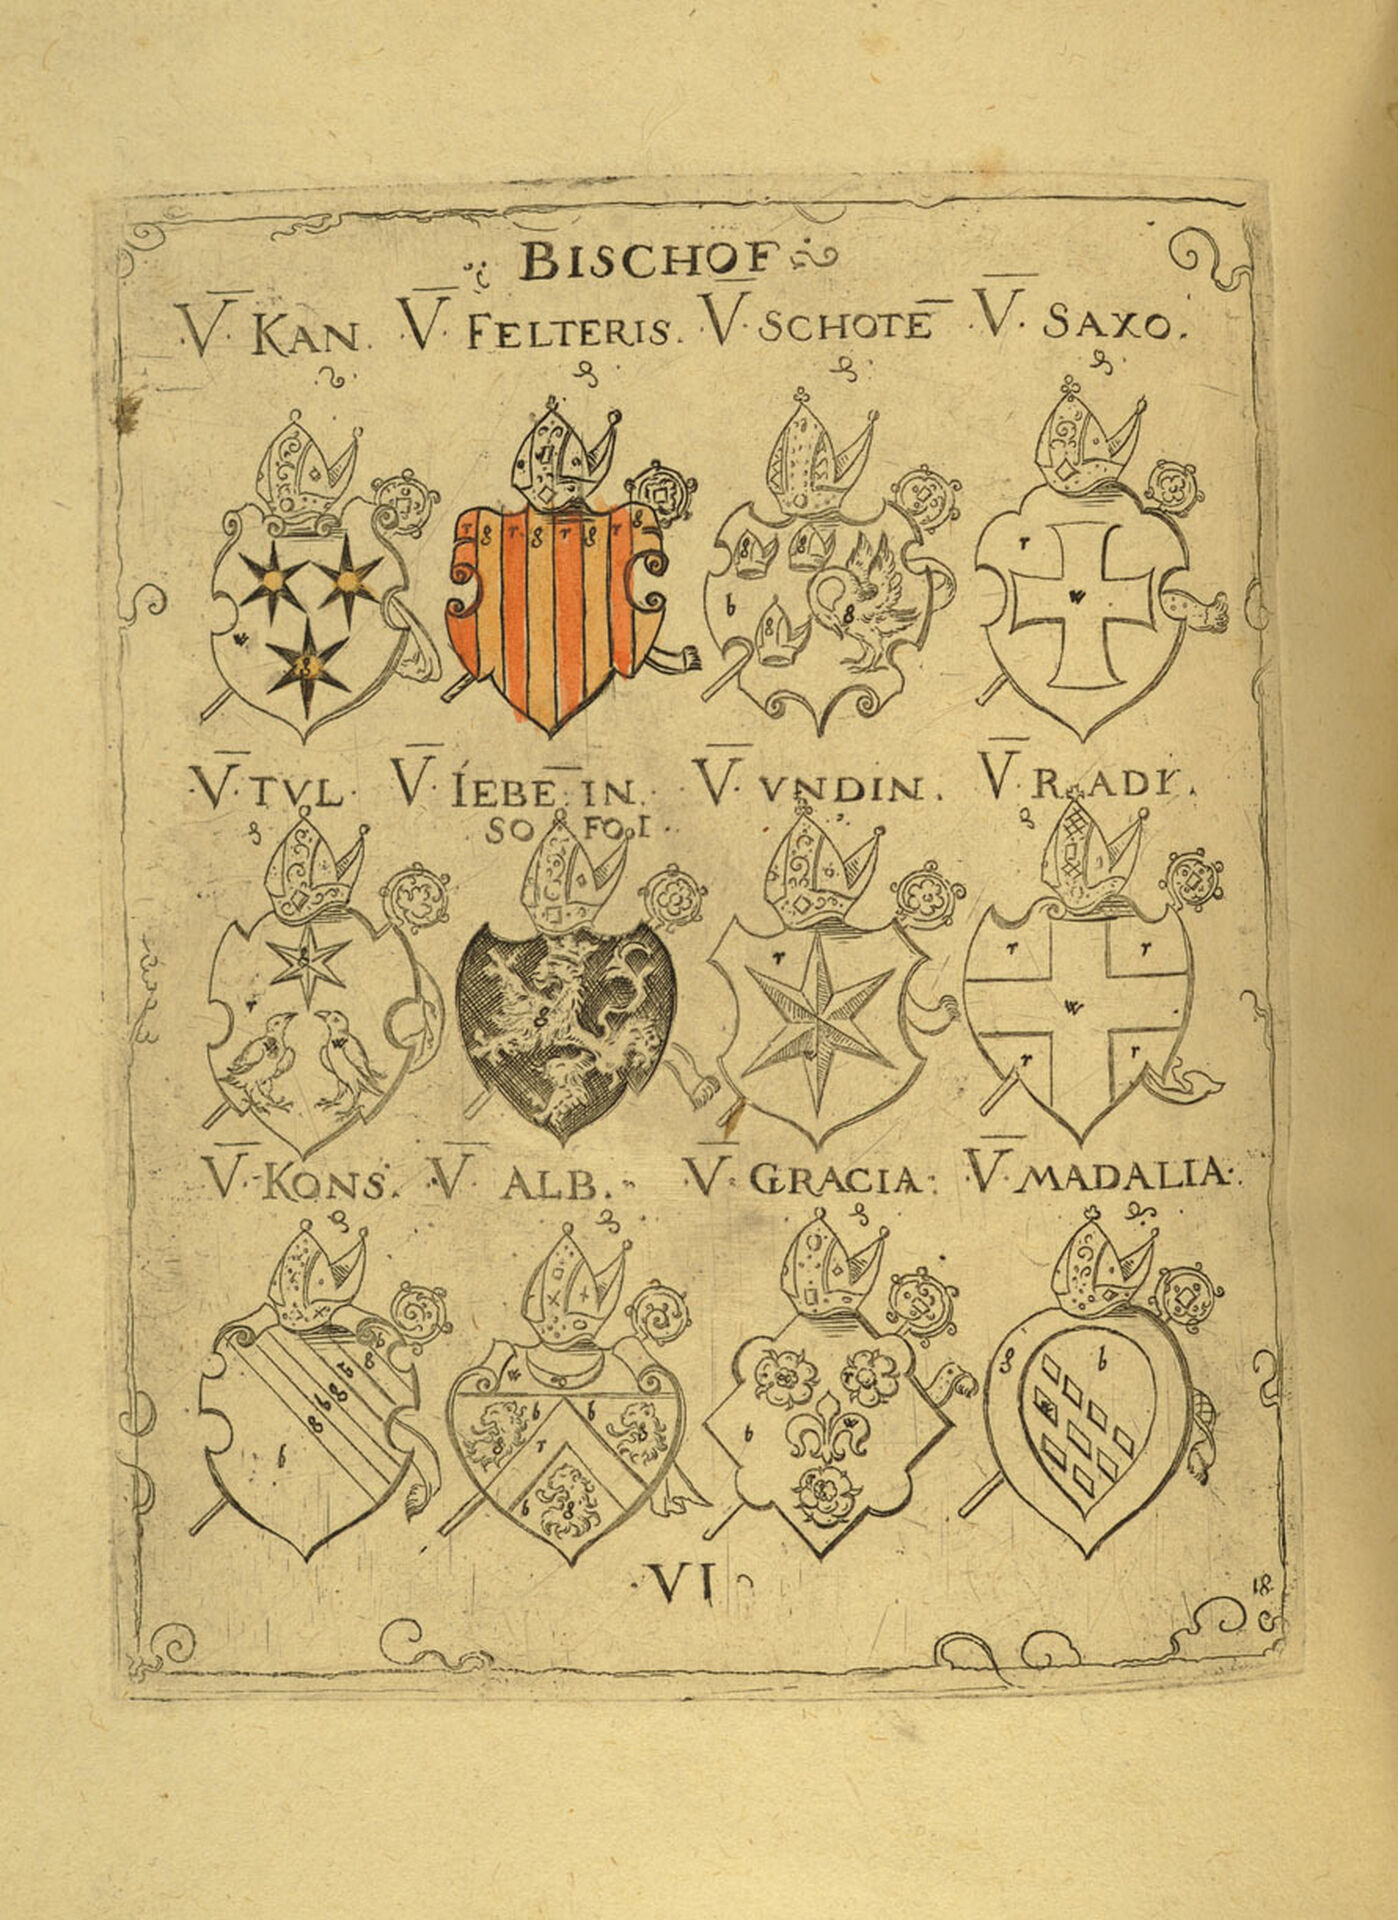 Virgi Solis Wappenbüchlein, Emblem